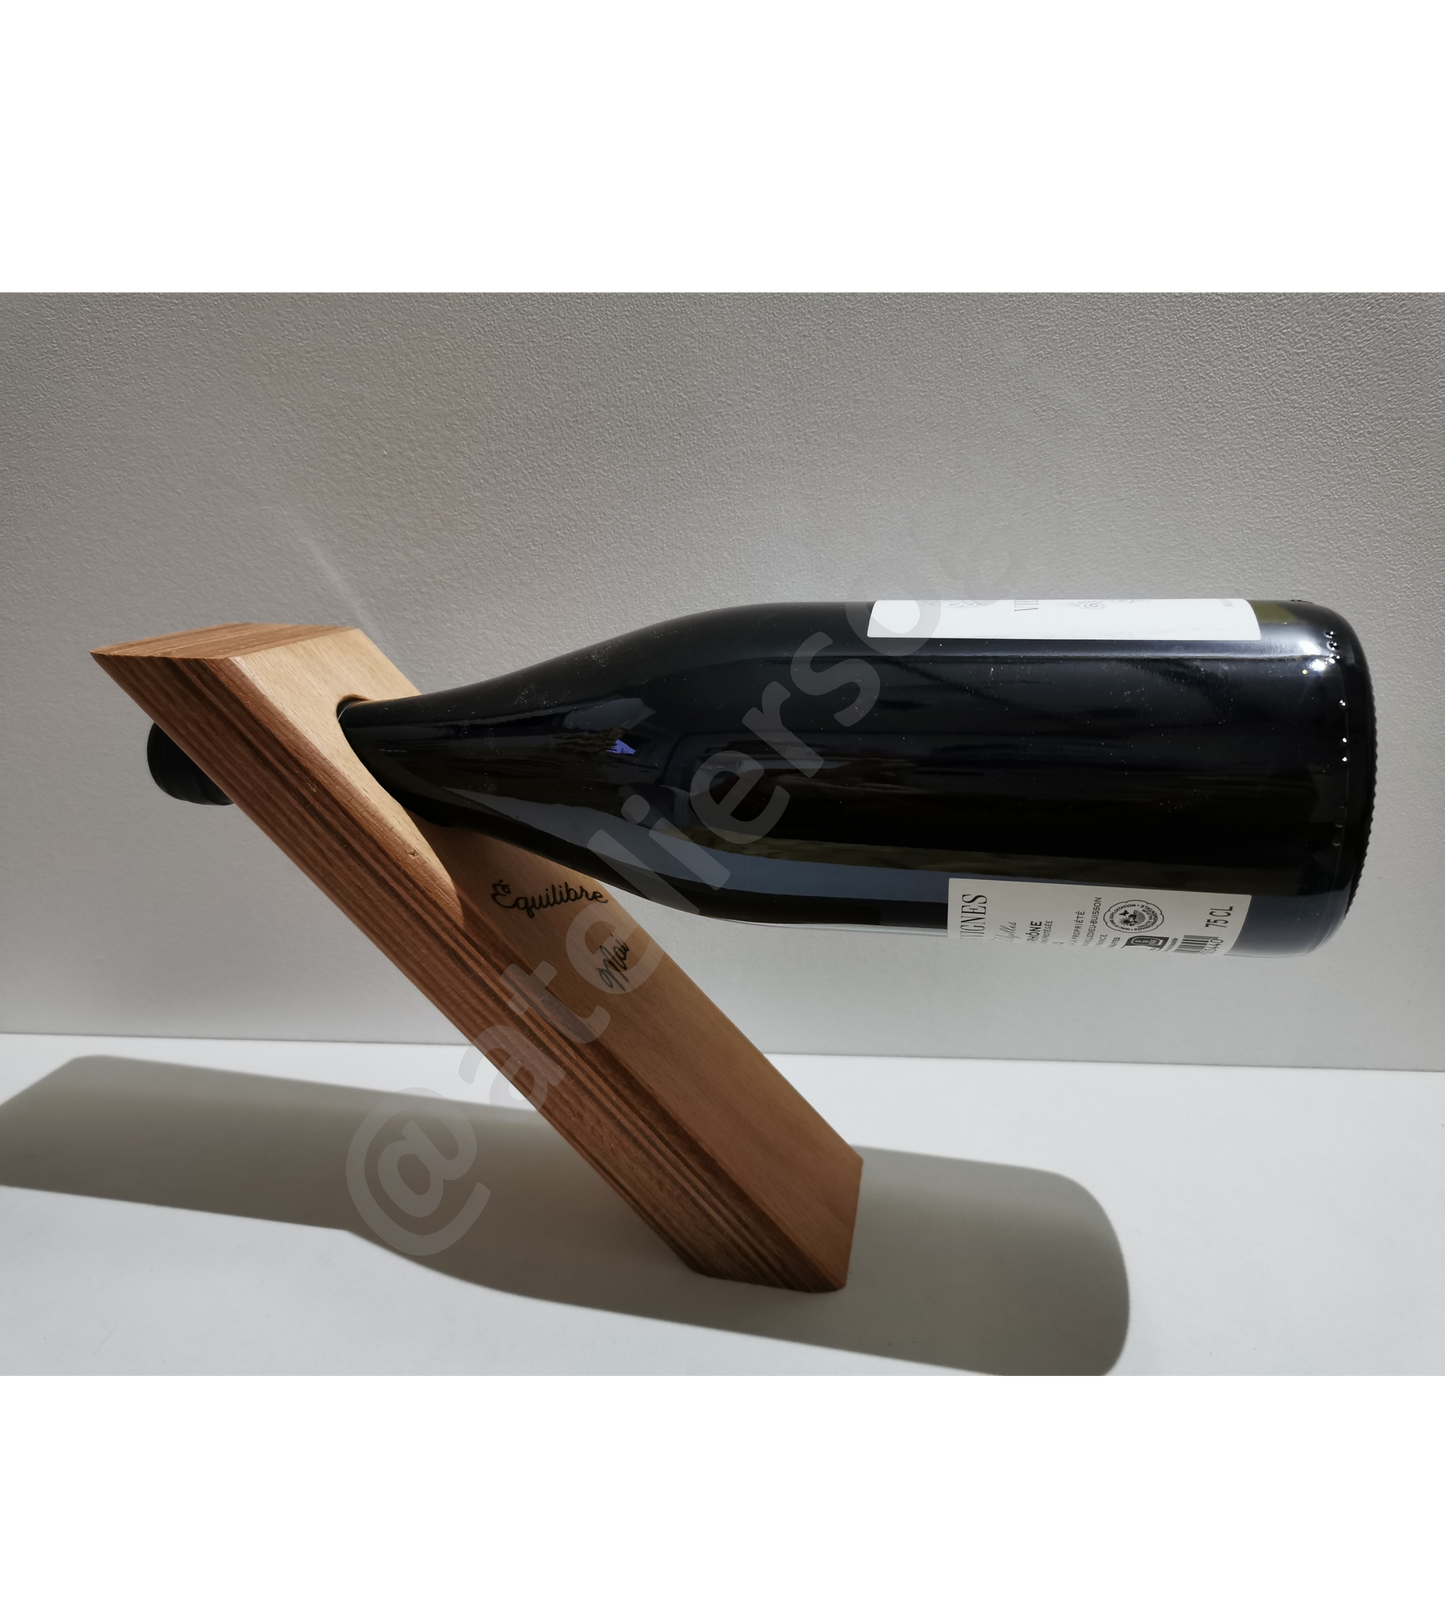 Support pour bouteille de vin en bois massif ou contreplaqué de surcyclage